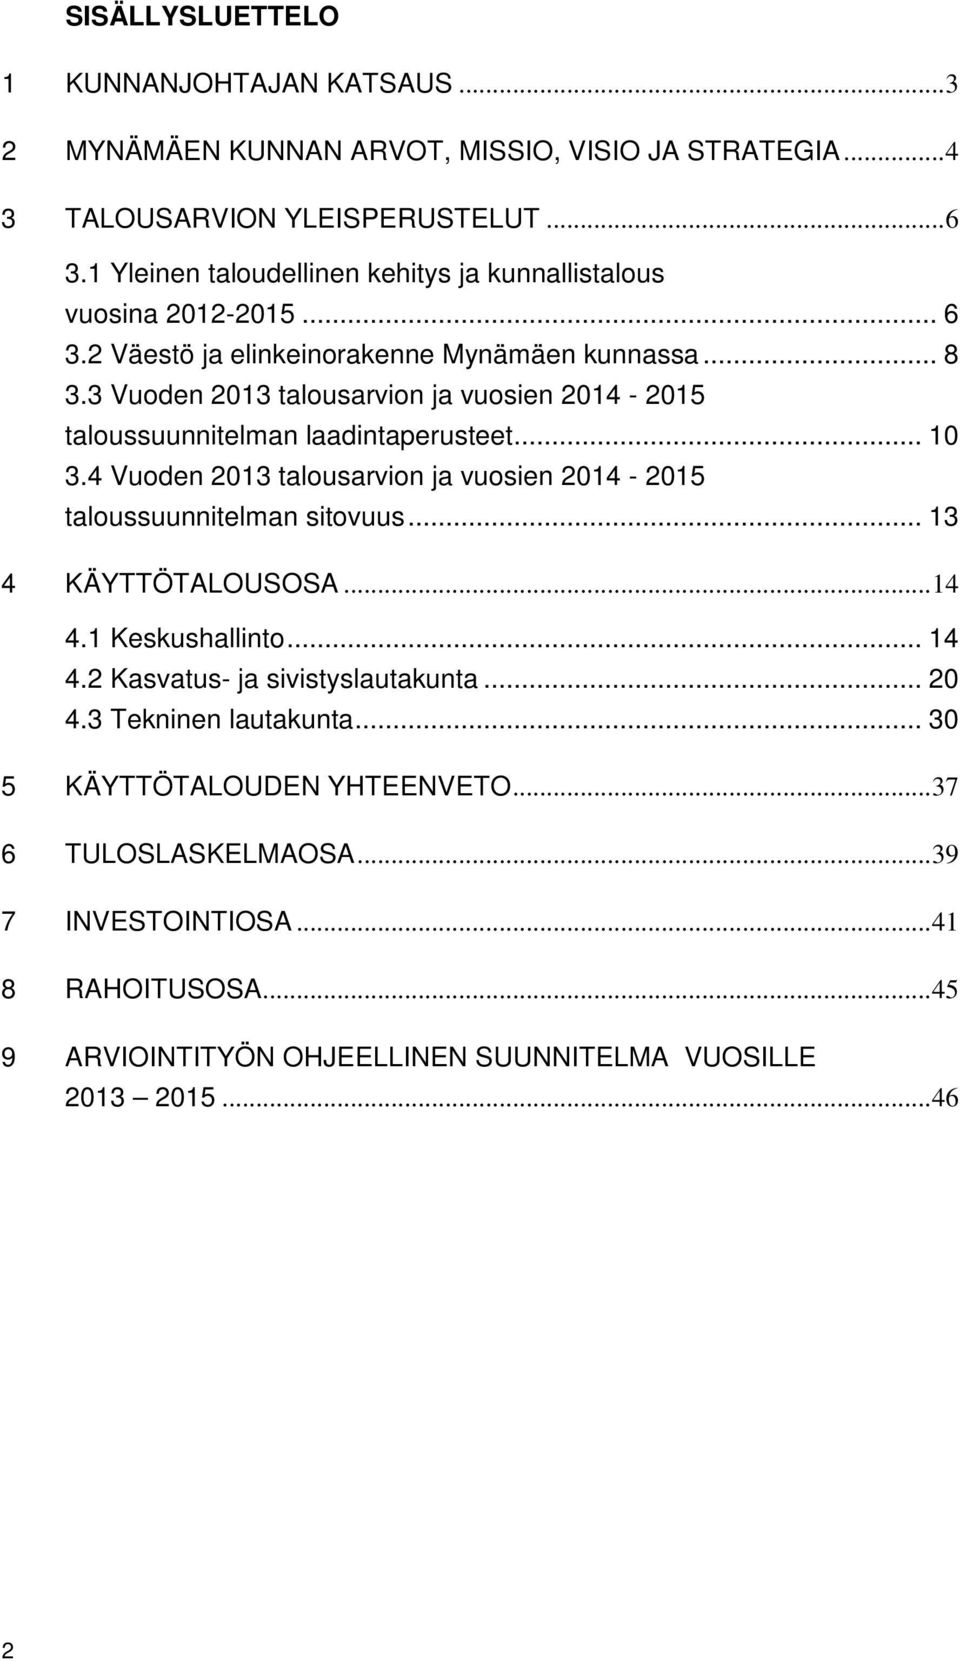 3 Vuoden 2013 talousarvion ja vuosien 2014-2015 taloussuunnitelman laadintaperusteet... 10 3.4 Vuoden 2013 talousarvion ja vuosien 2014-2015 taloussuunnitelman sitovuus.